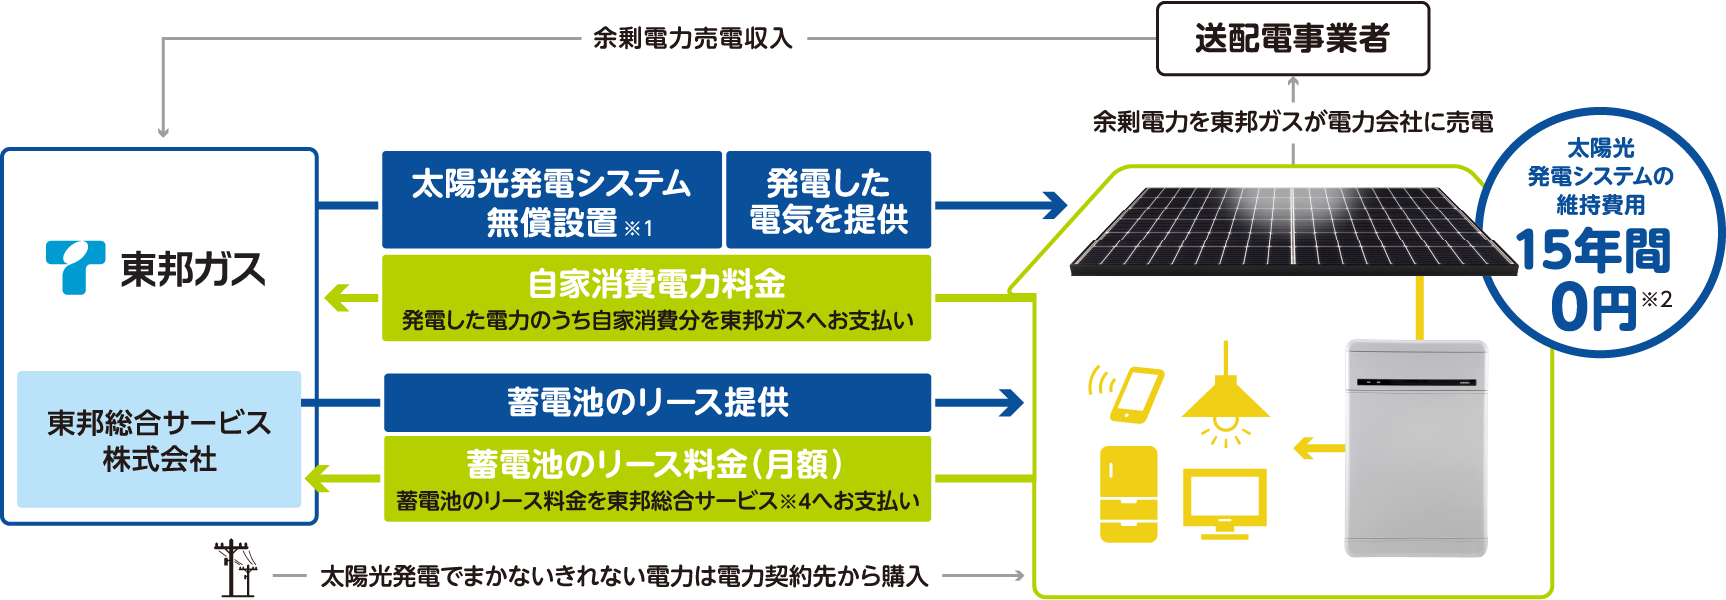 太陽光発電システムの維持費用 15年間０円※2